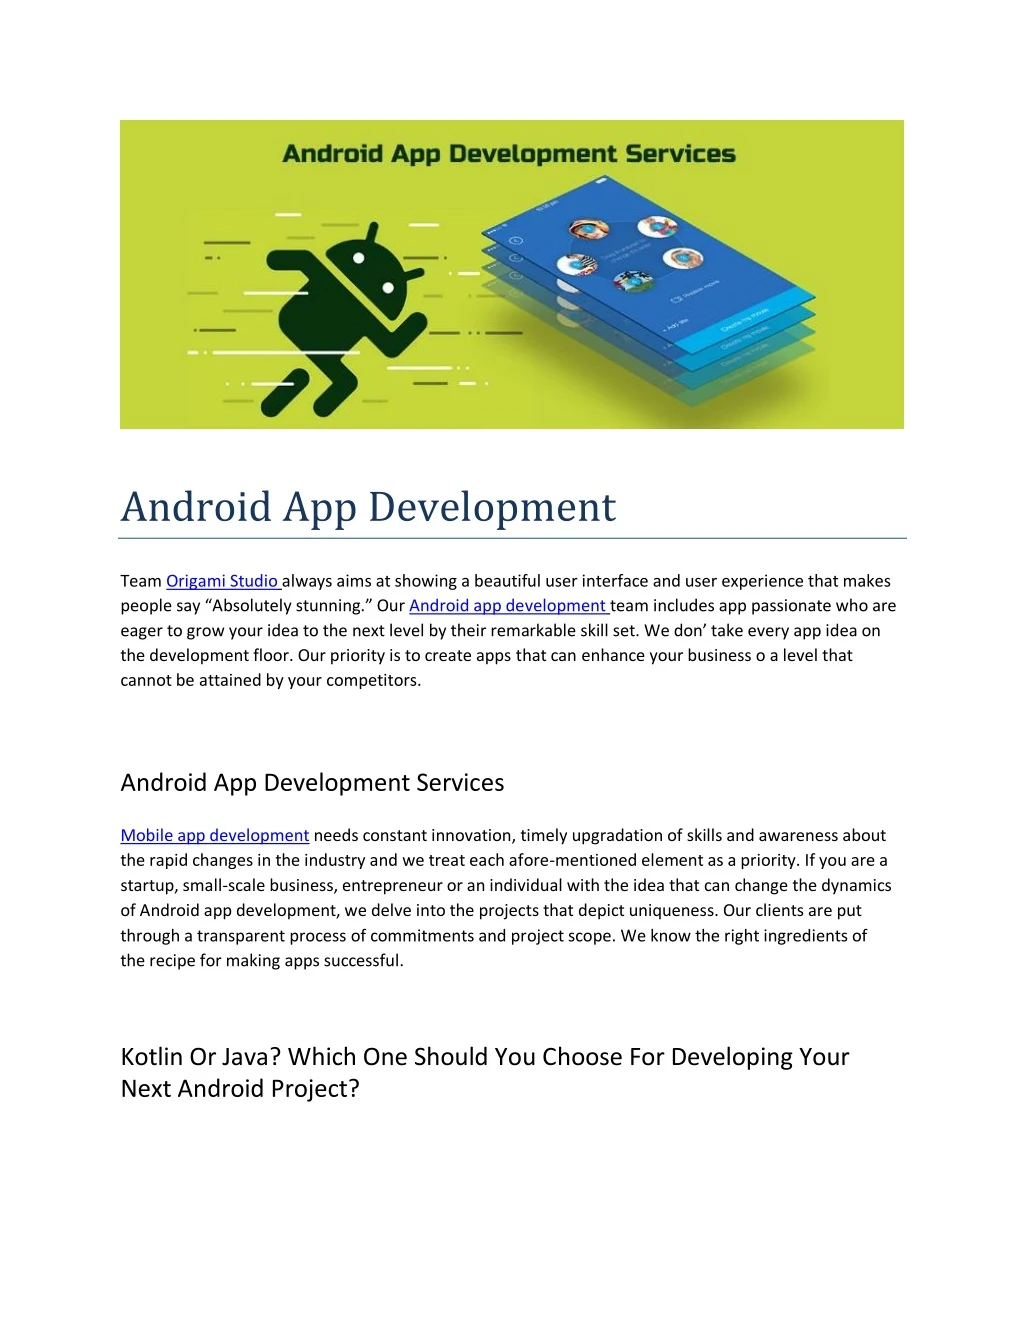 android app development team origami studio